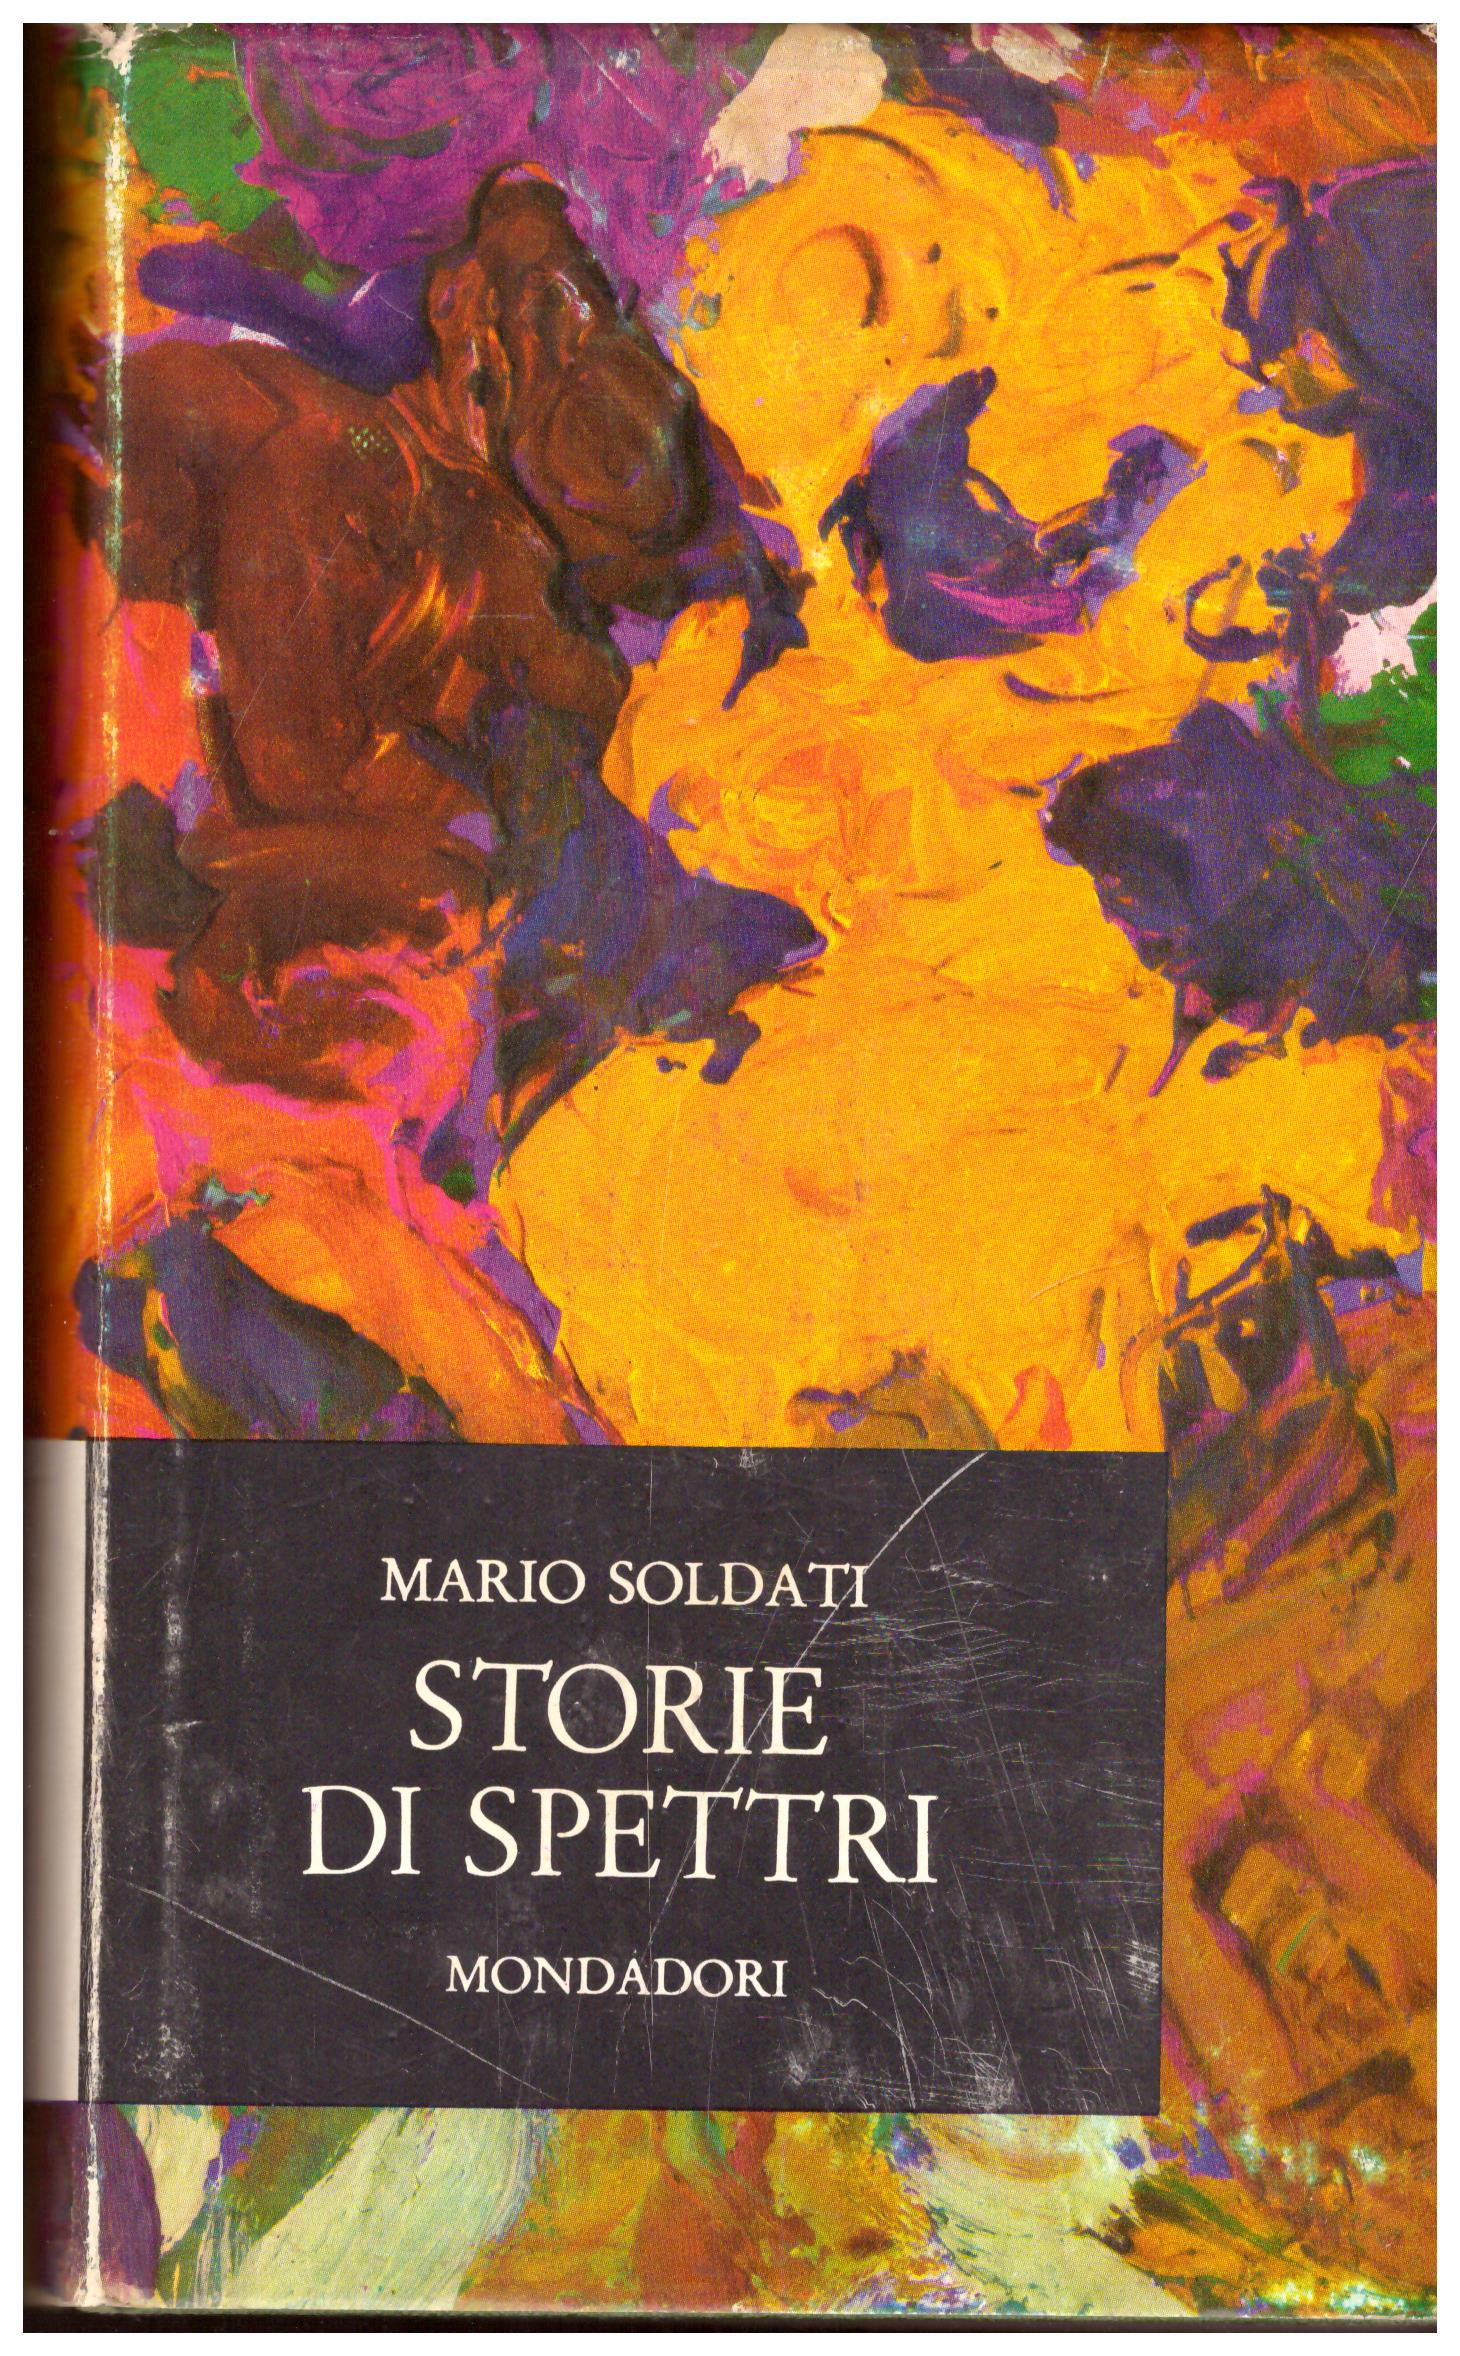 Titolo:Storie di spettri Autore: Mario Soldati  Editore: mondadori 1962